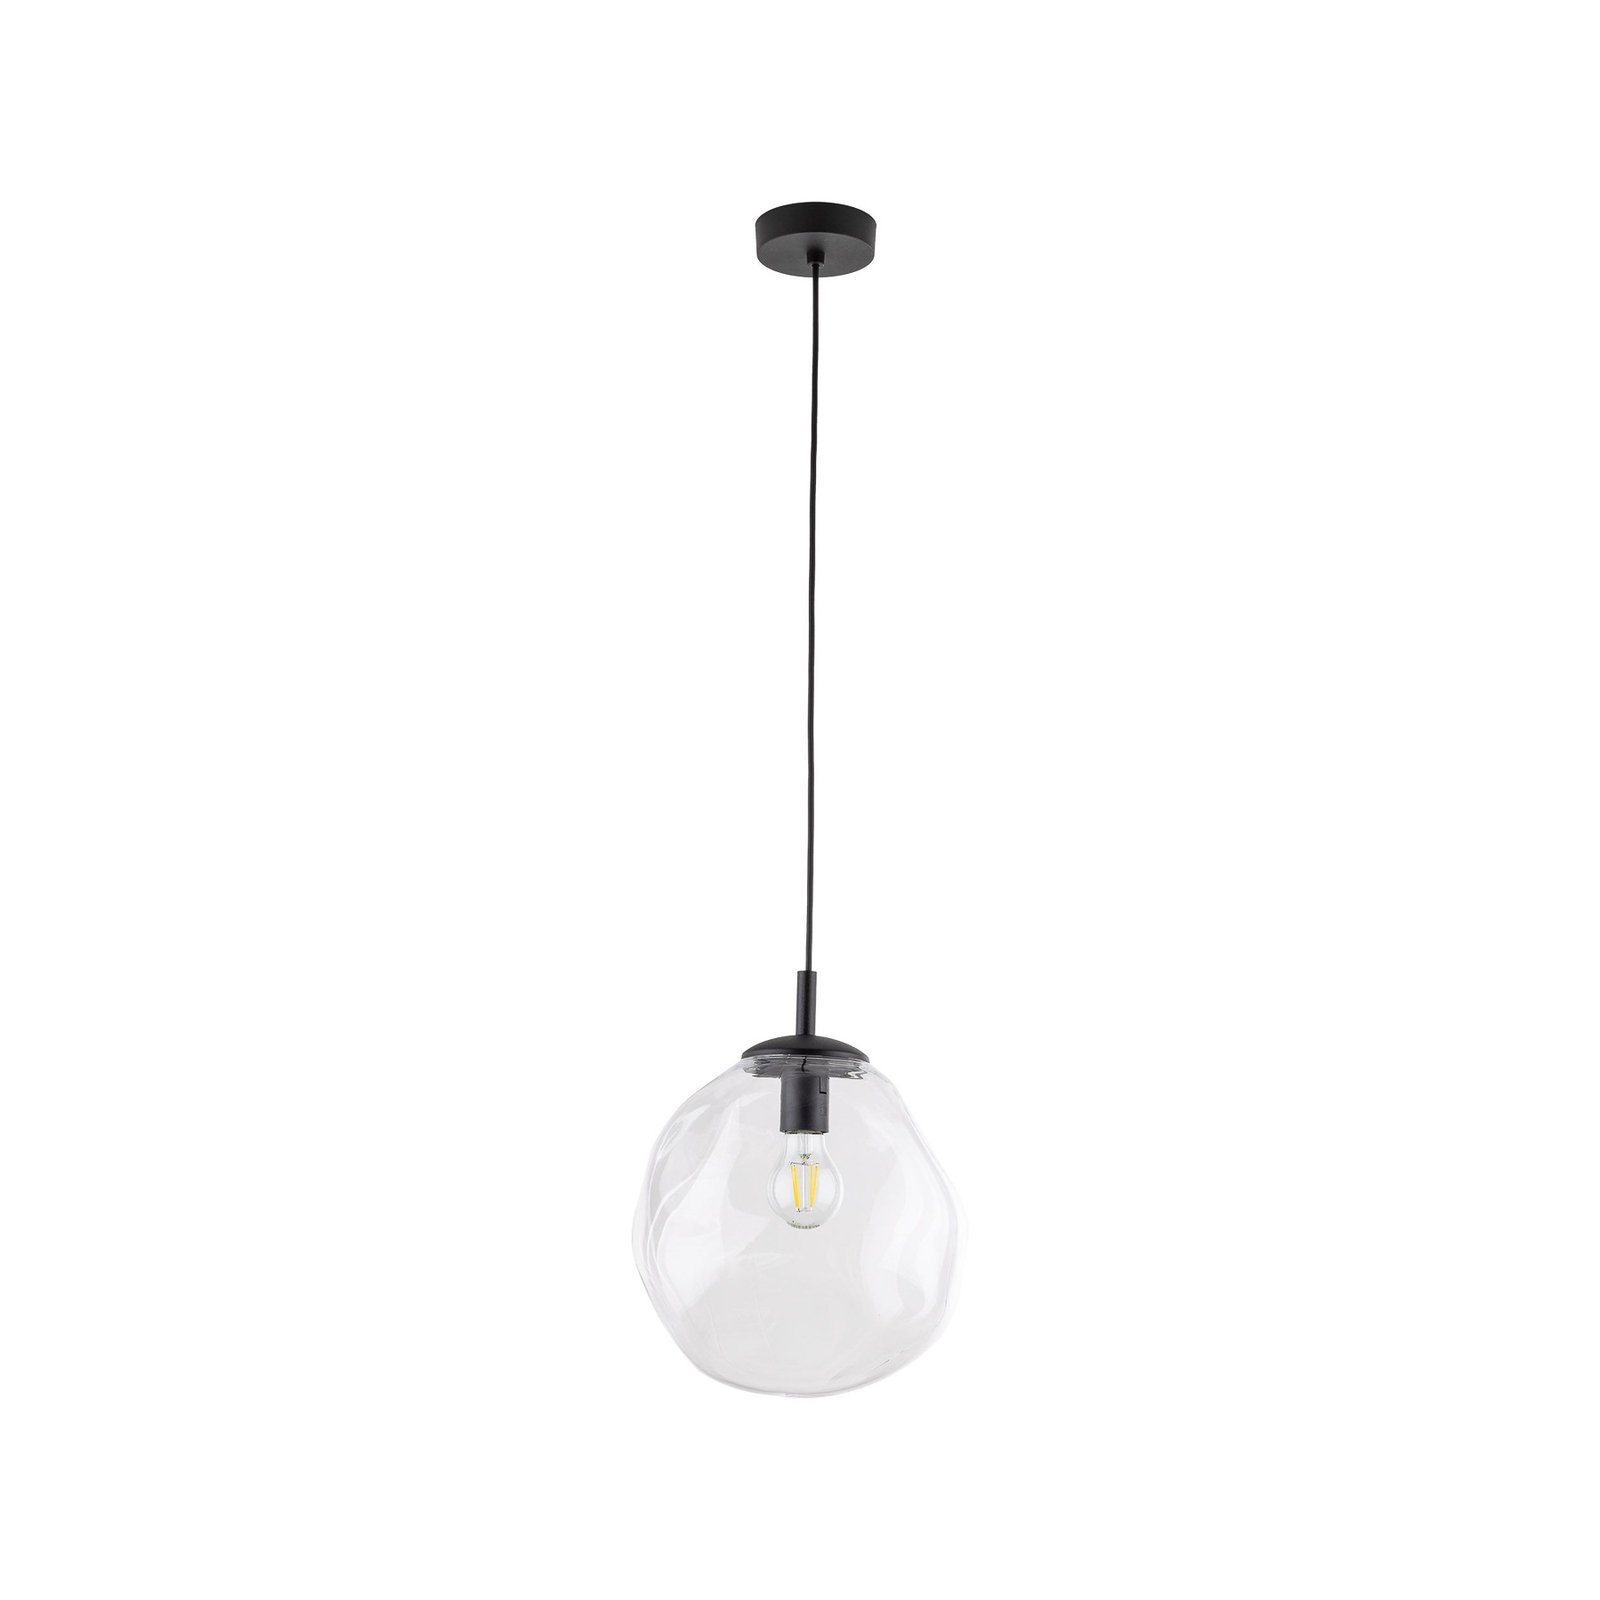 Sol Mini viseća svjetiljka, staklo, Ø 25 cm, crno/prozirno